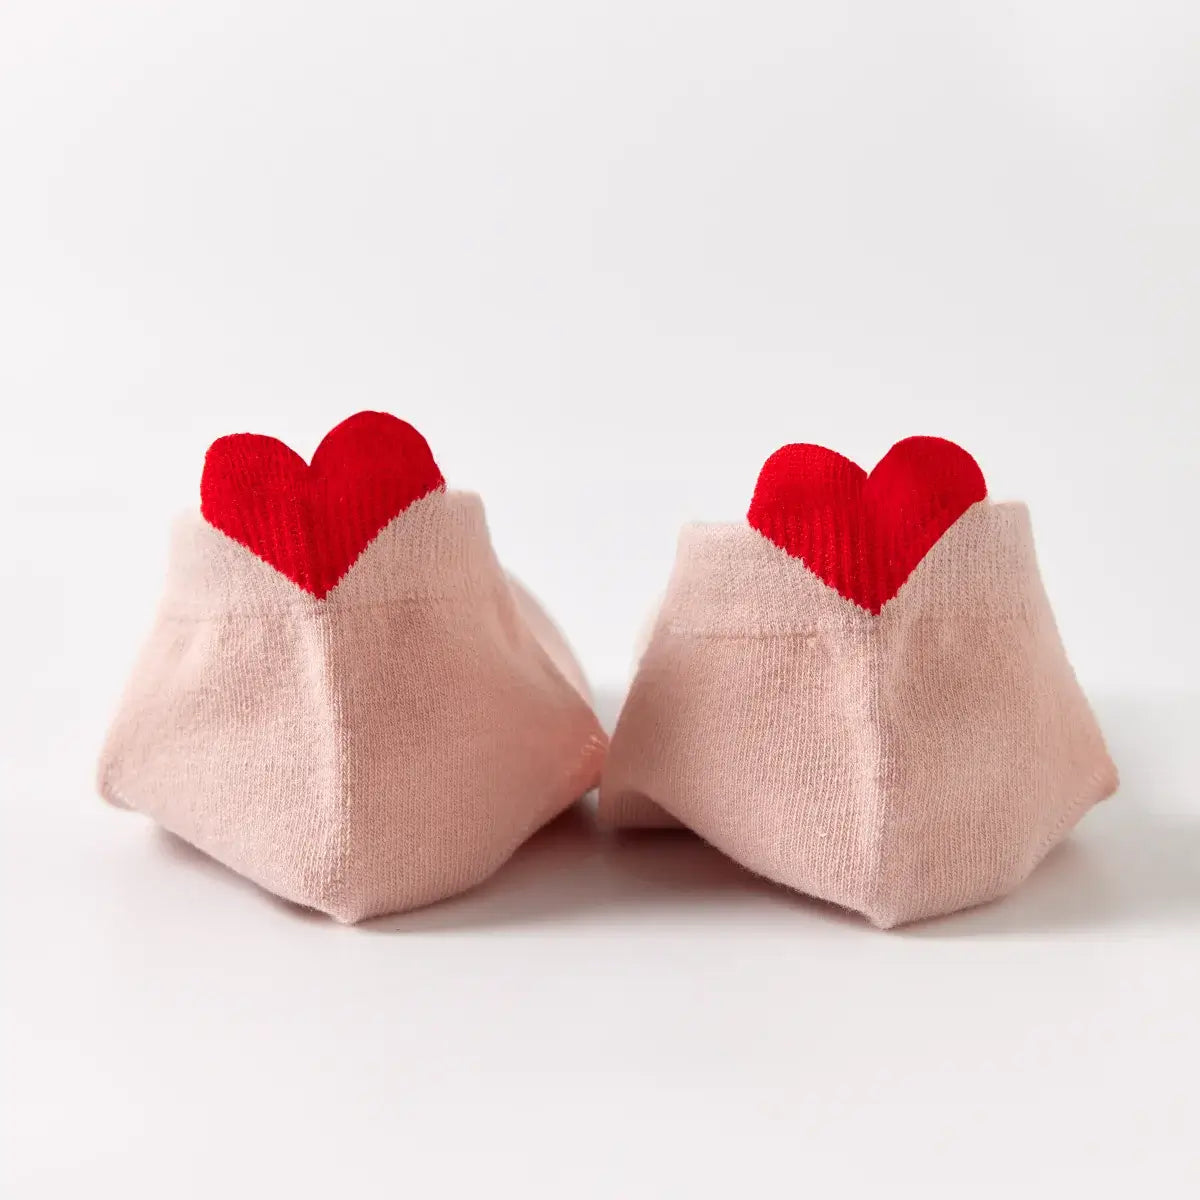 Chaussettes roses en coton unis Coup de Coeur pour femme | Chaussettes douces et respirantes | Un cadeau parfait pour les femmes de tous âges | Disponibles à un prix abordable.